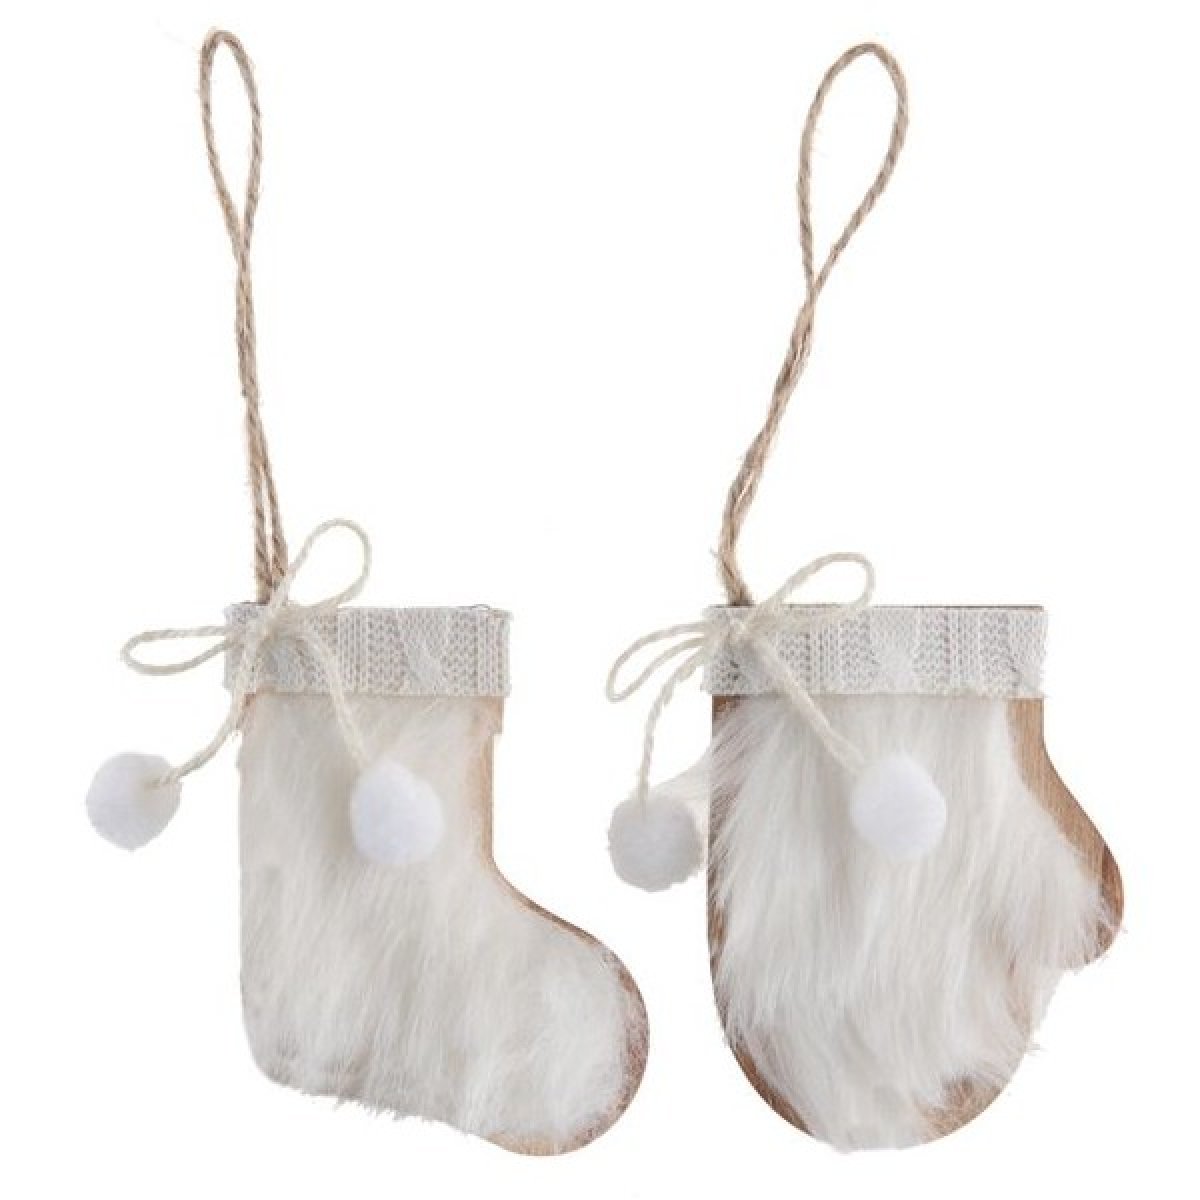 Suspensions Noël - botte et gant avec fourrure blanche 